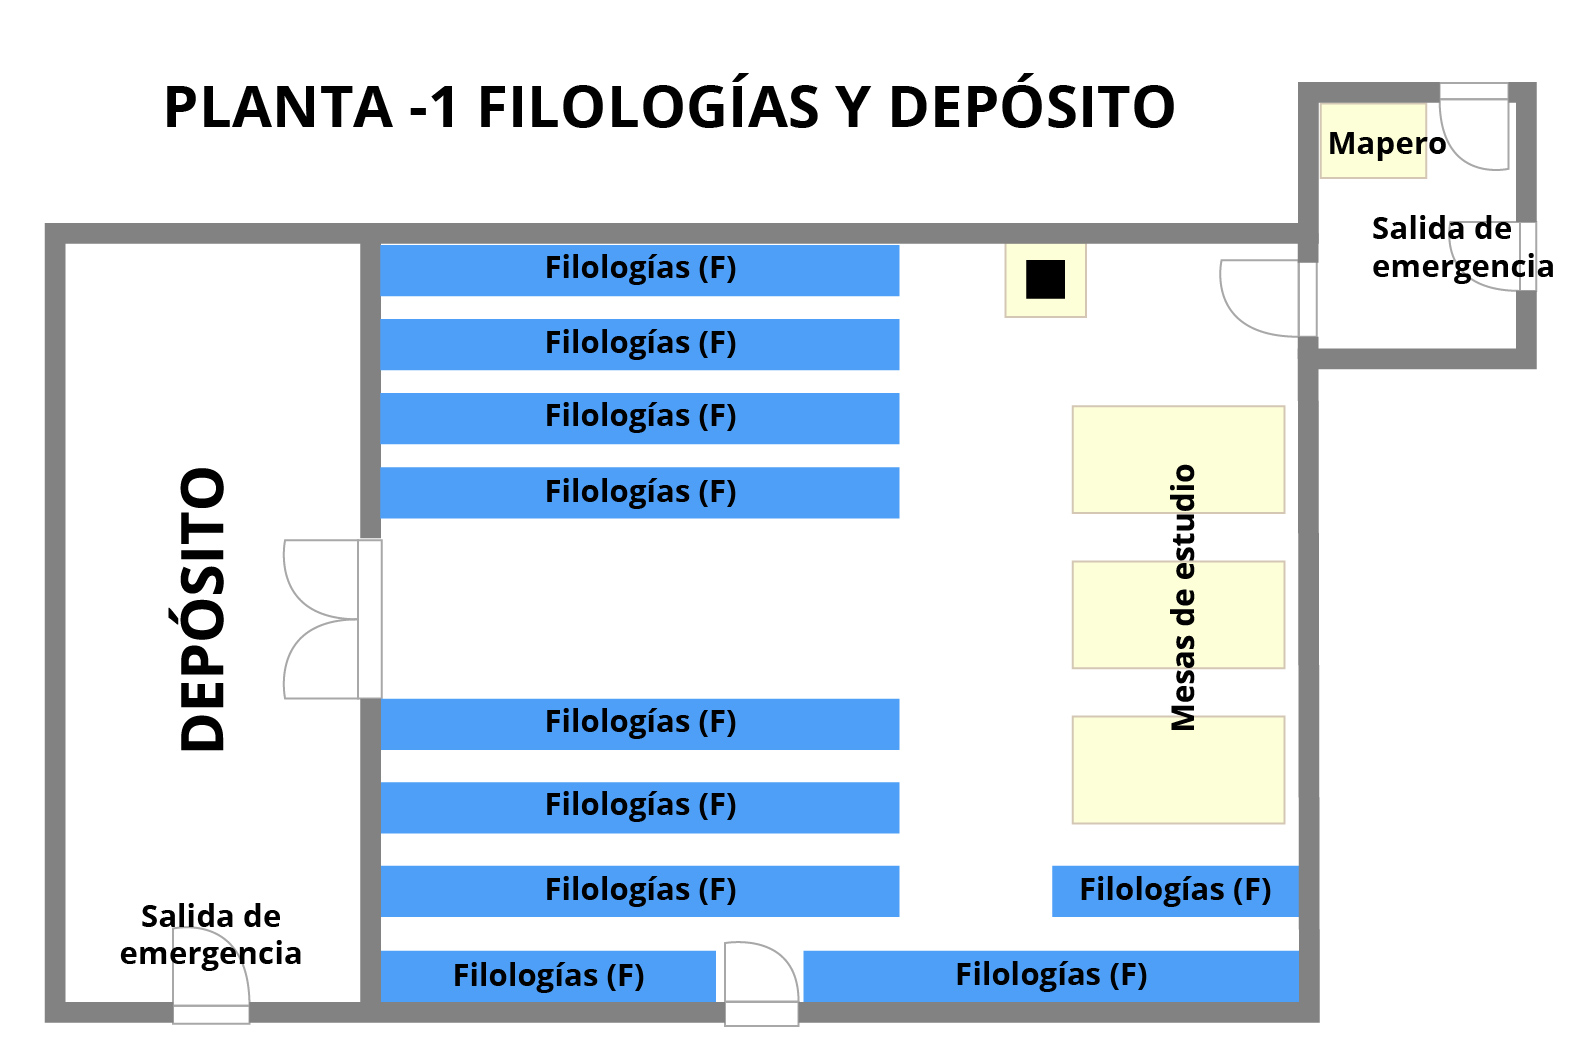 Planta -1 Filologías y a deposito - Biblioteca Facultad de Filosofía y Letras